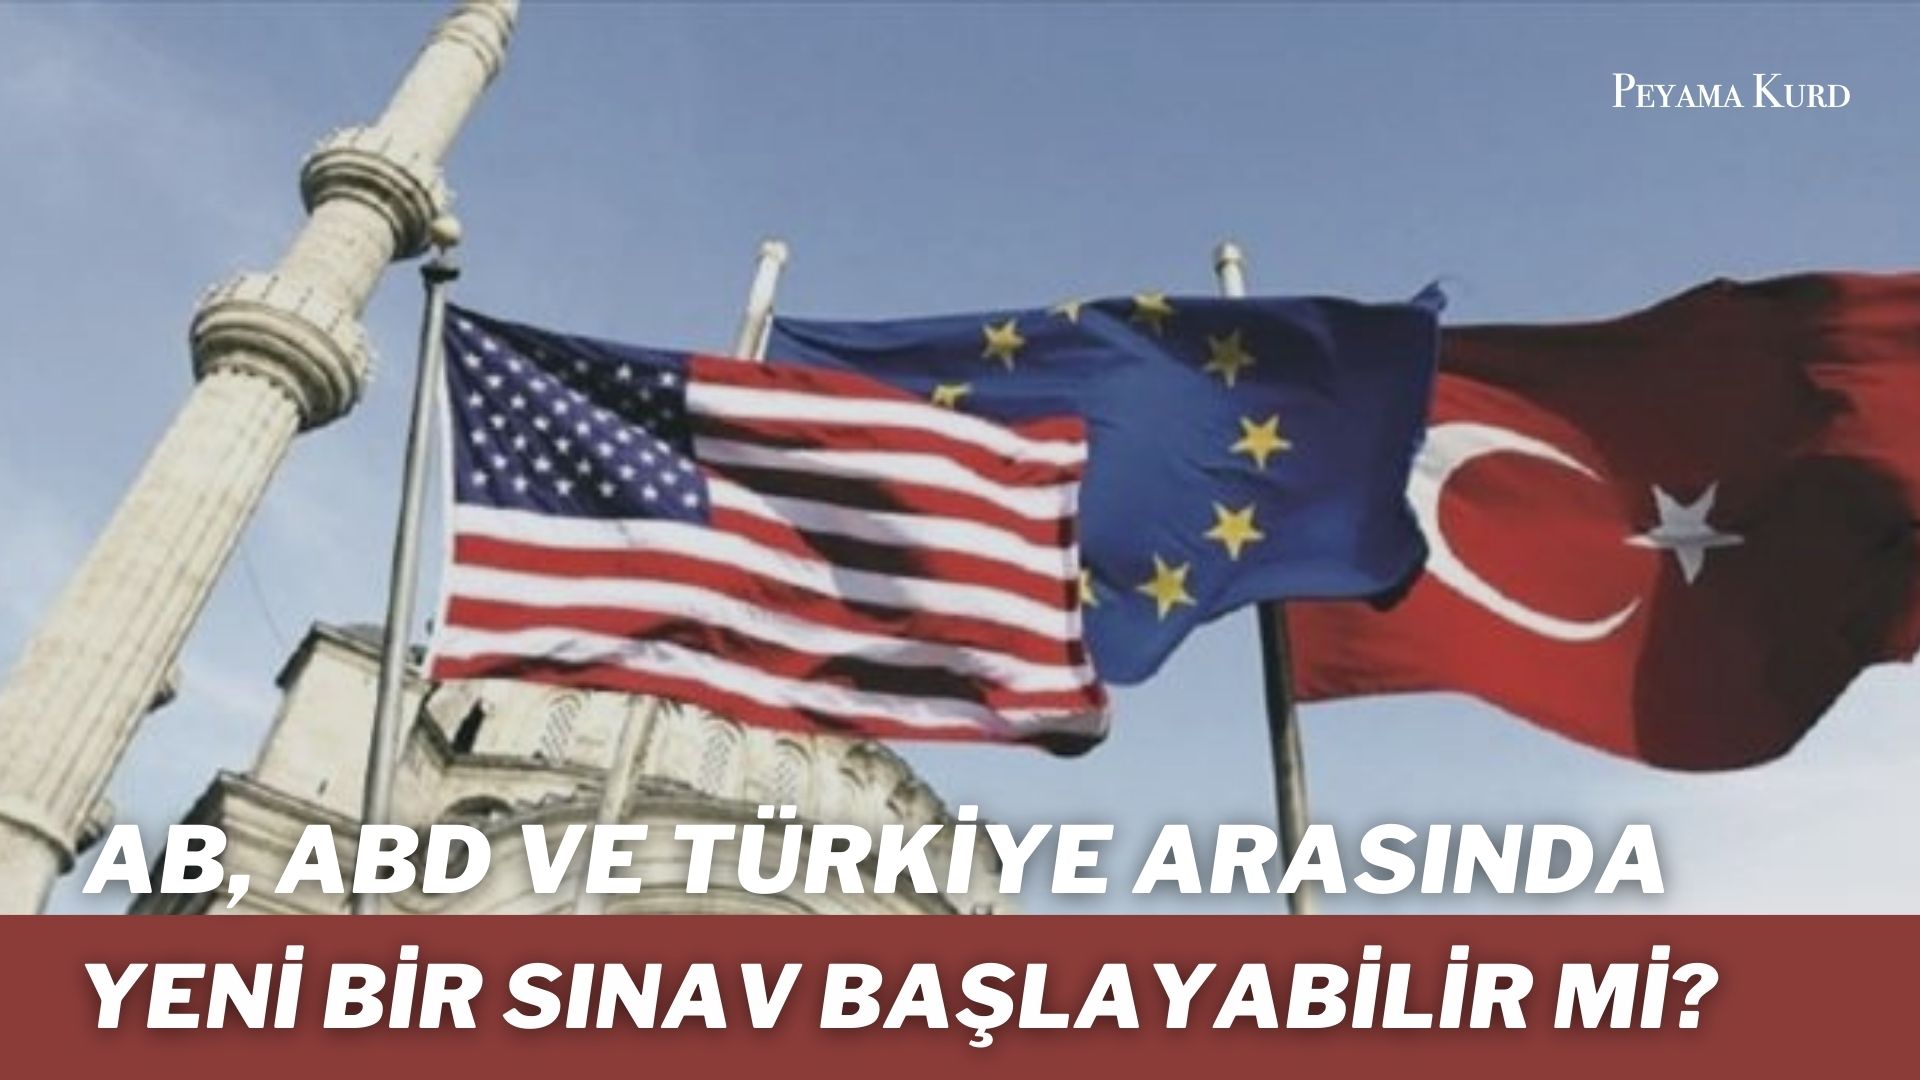 “…Ankara, ABD’nin DSG ile ittifakından da rahatsız”